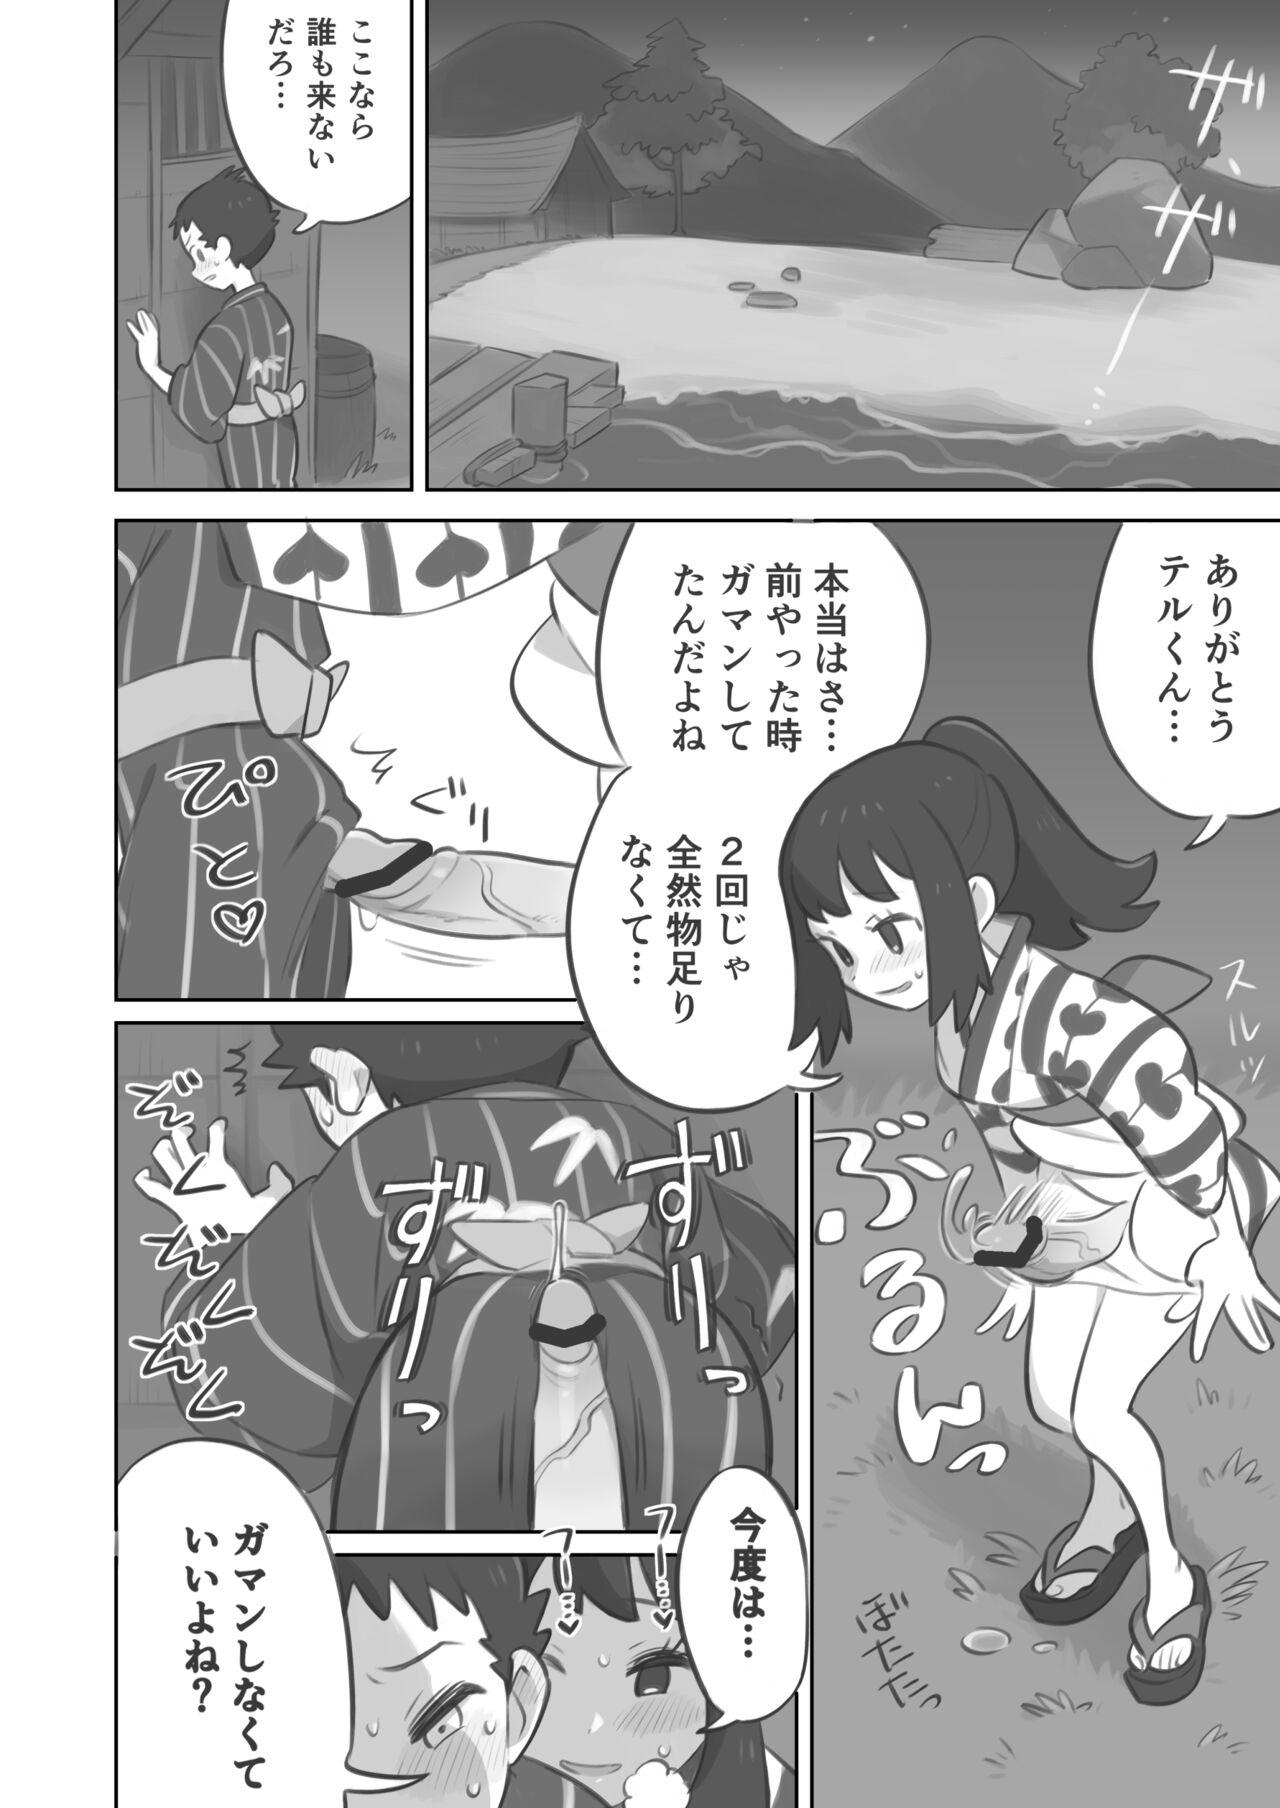 Edging Futanari shujinkō-chan ga Teru senpai o horu manga 2 - Pokemon | pocket monsters Reality - Page 6